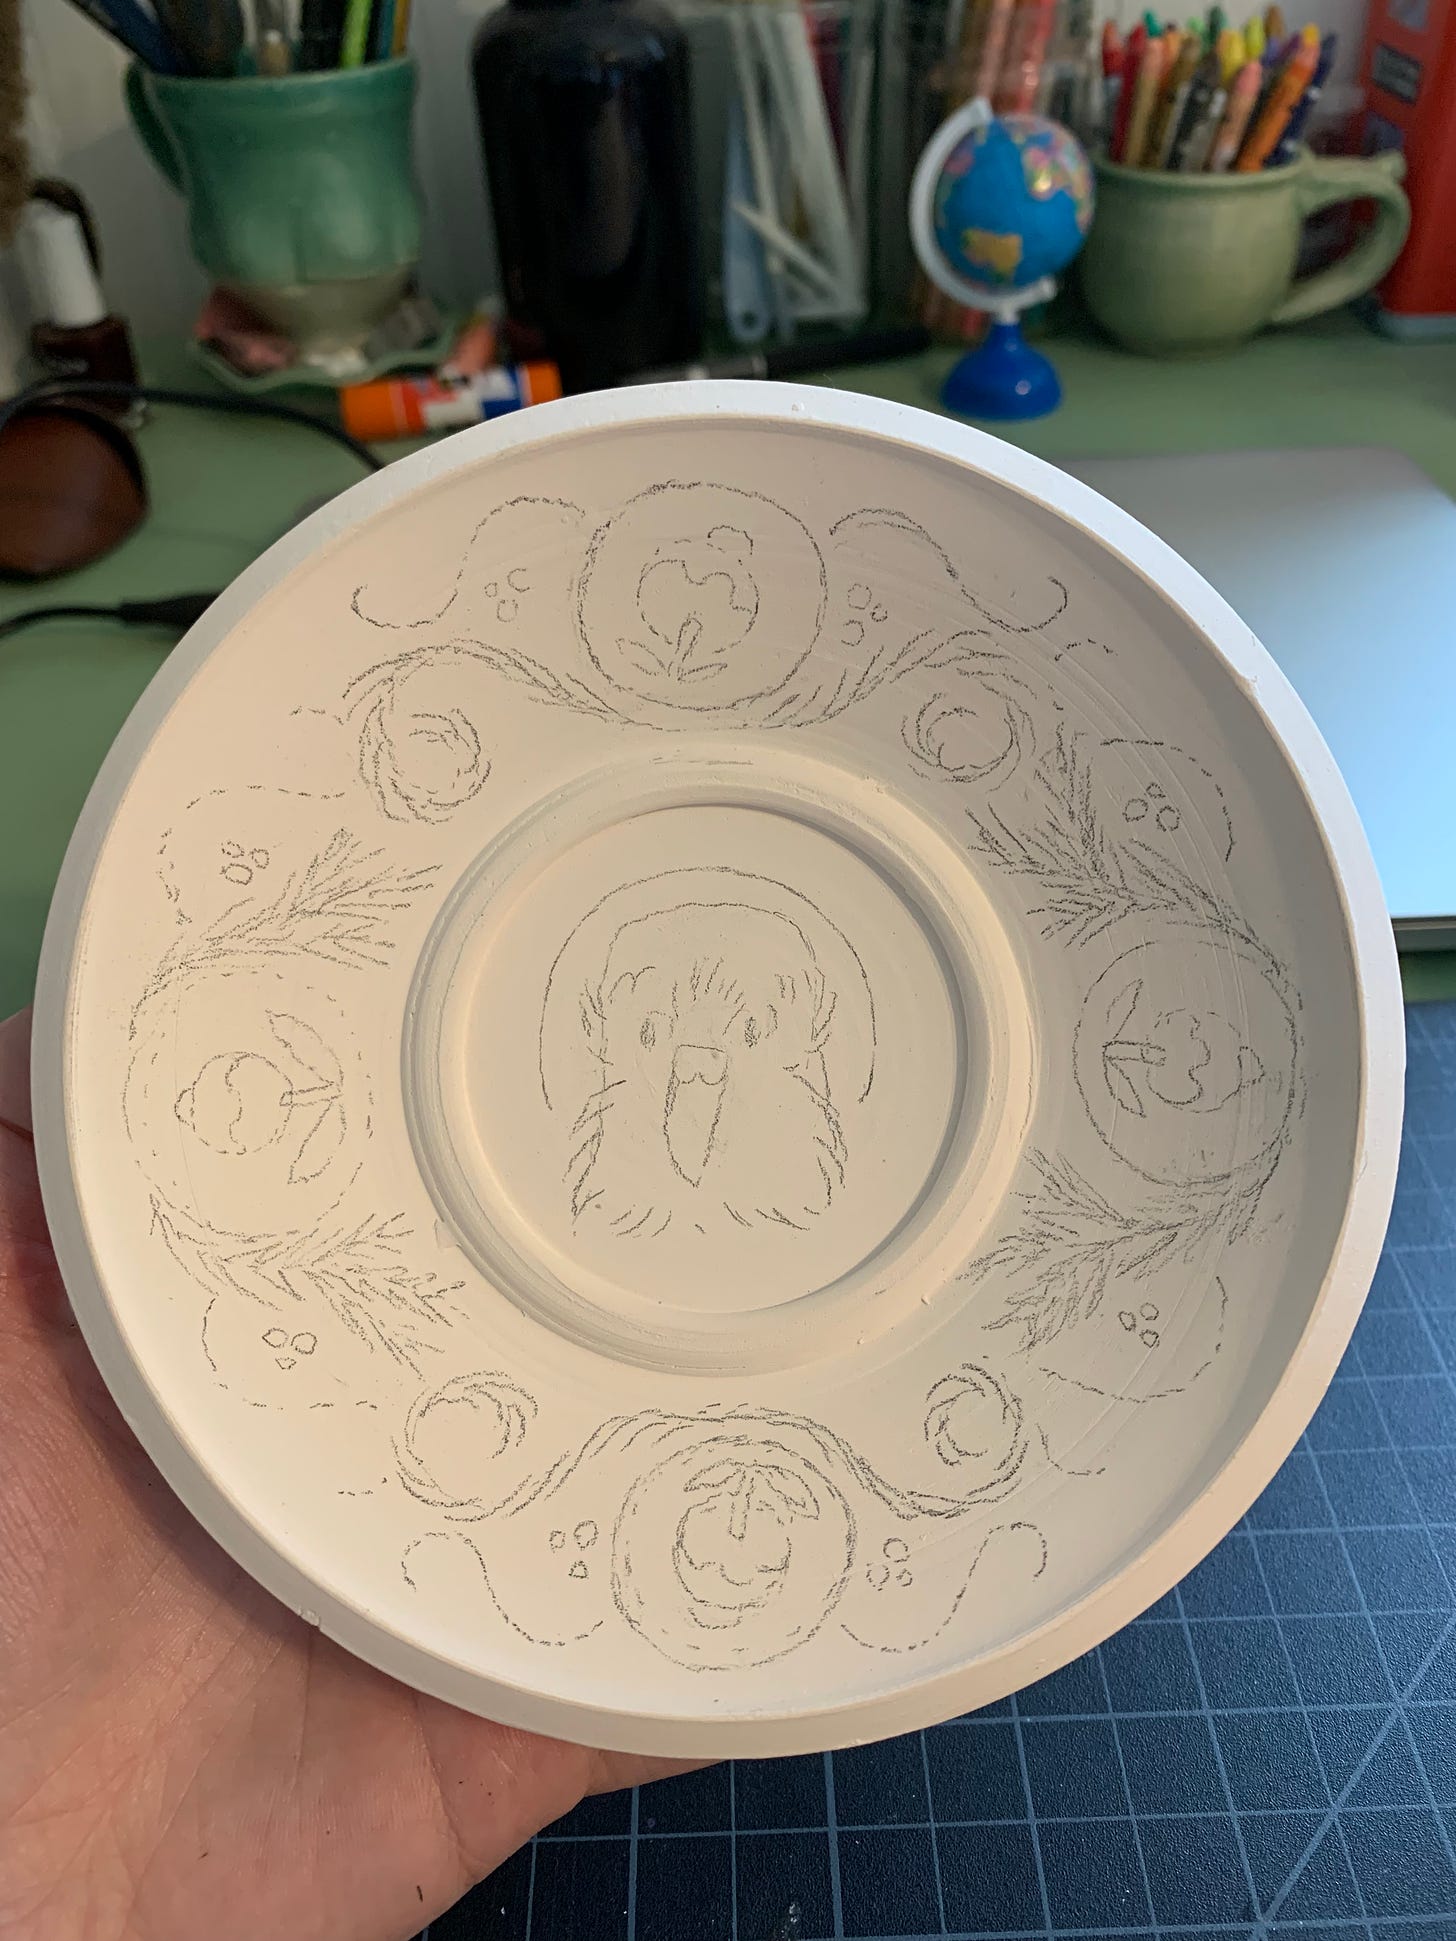 sketch for kakapo illustration on a ceramic saucer by Kayla Stark